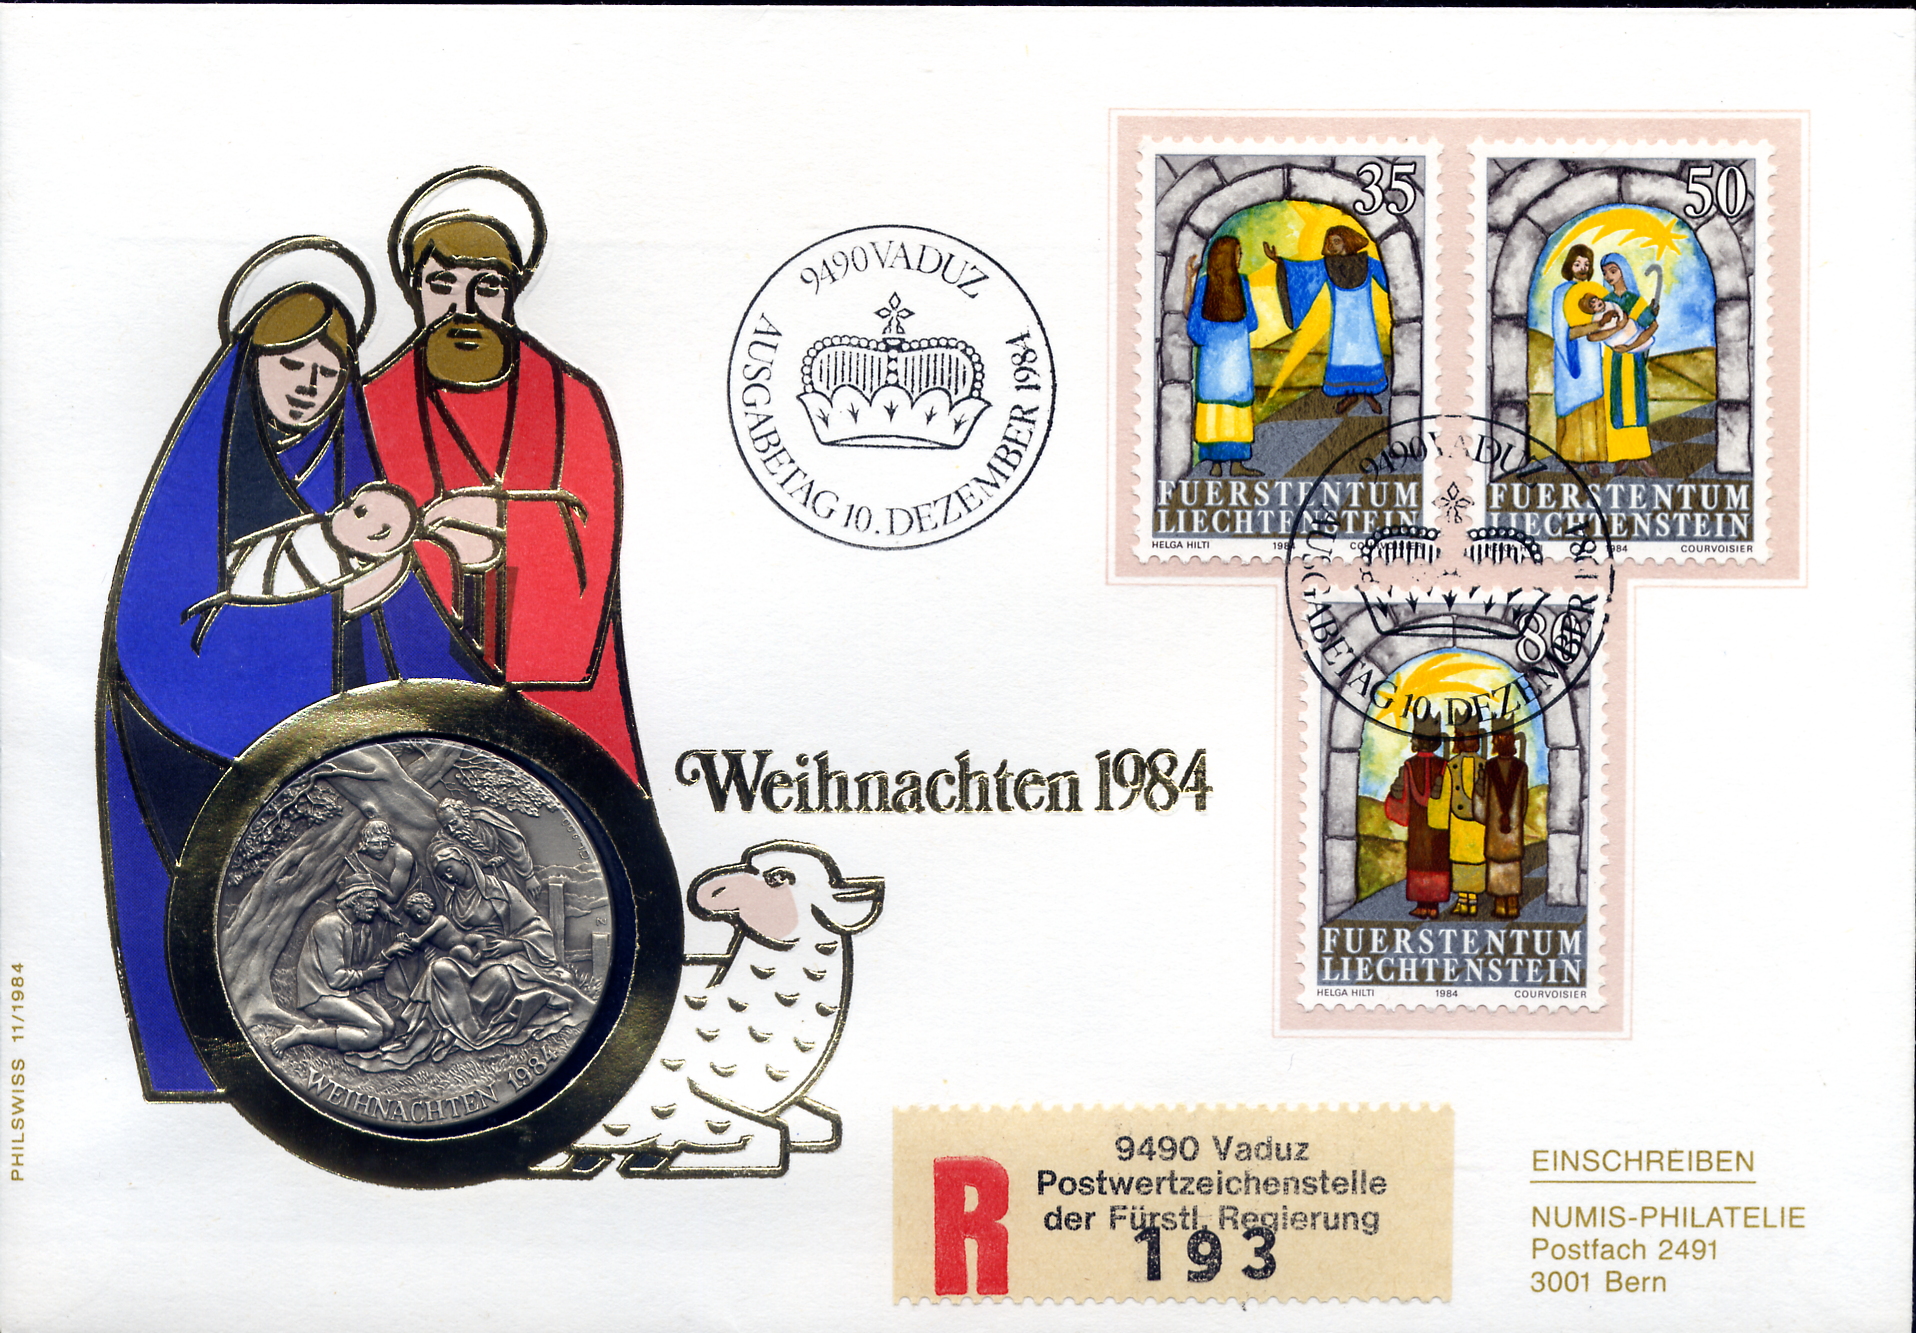 https://swiss-stamps.org/wp-content/uploads/2023/12/1984-12-Vaduz.jpg